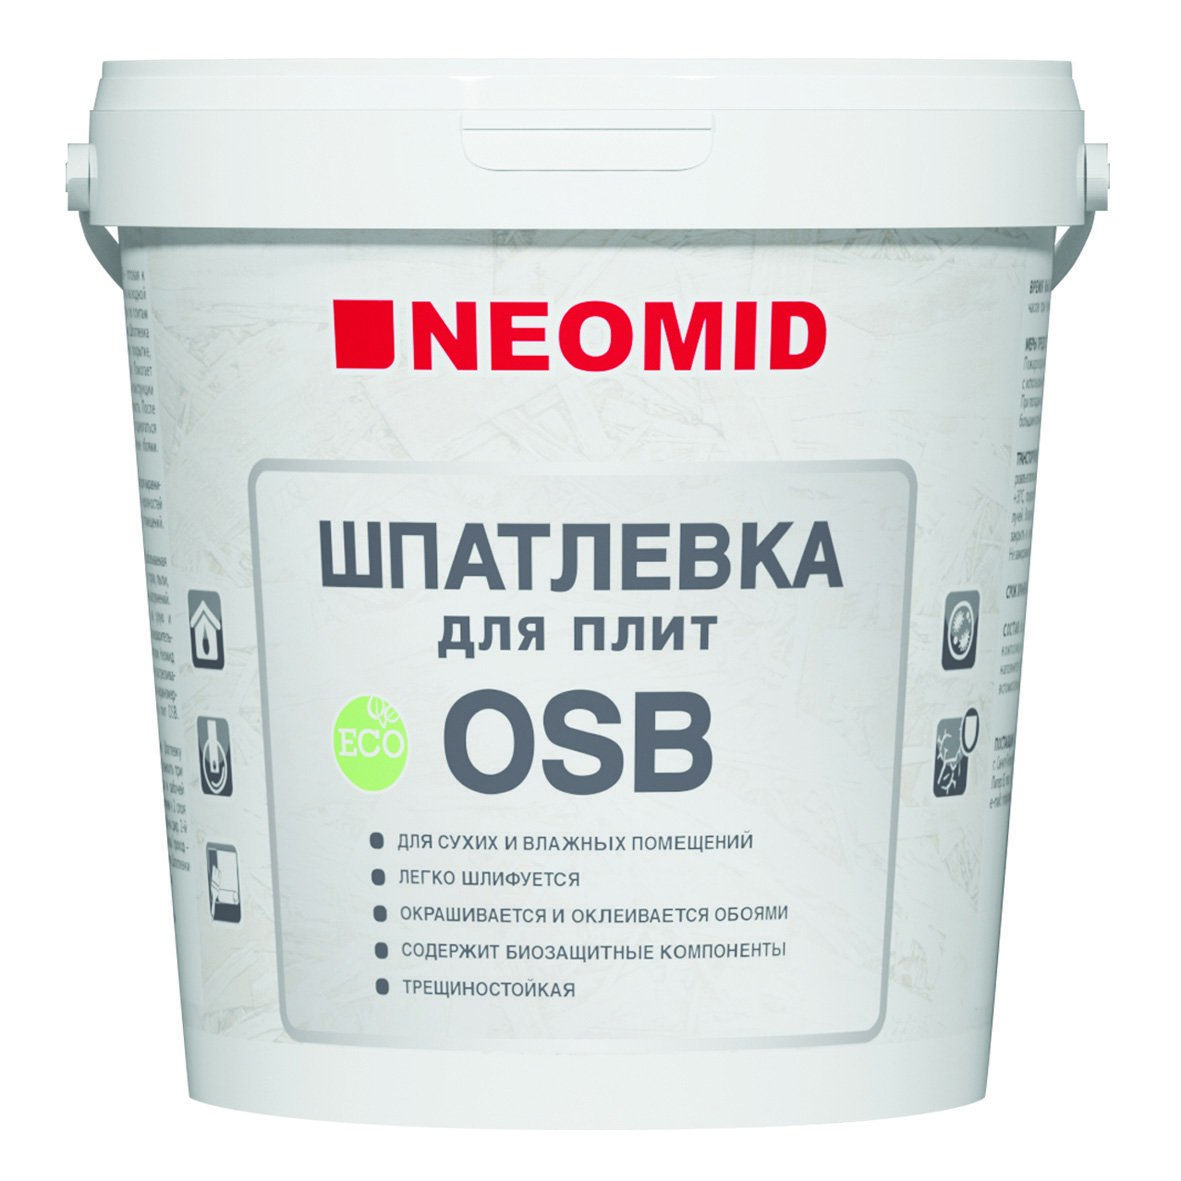 Neomid для плит osb. Неомид шпатлевка для плит OSB, 1,3 кг. Шпатлевка NEOMID для плит OSB. NEOMID" шпатлевка для плит OSB 7кг. Шпаклёвка замазка Неомид.